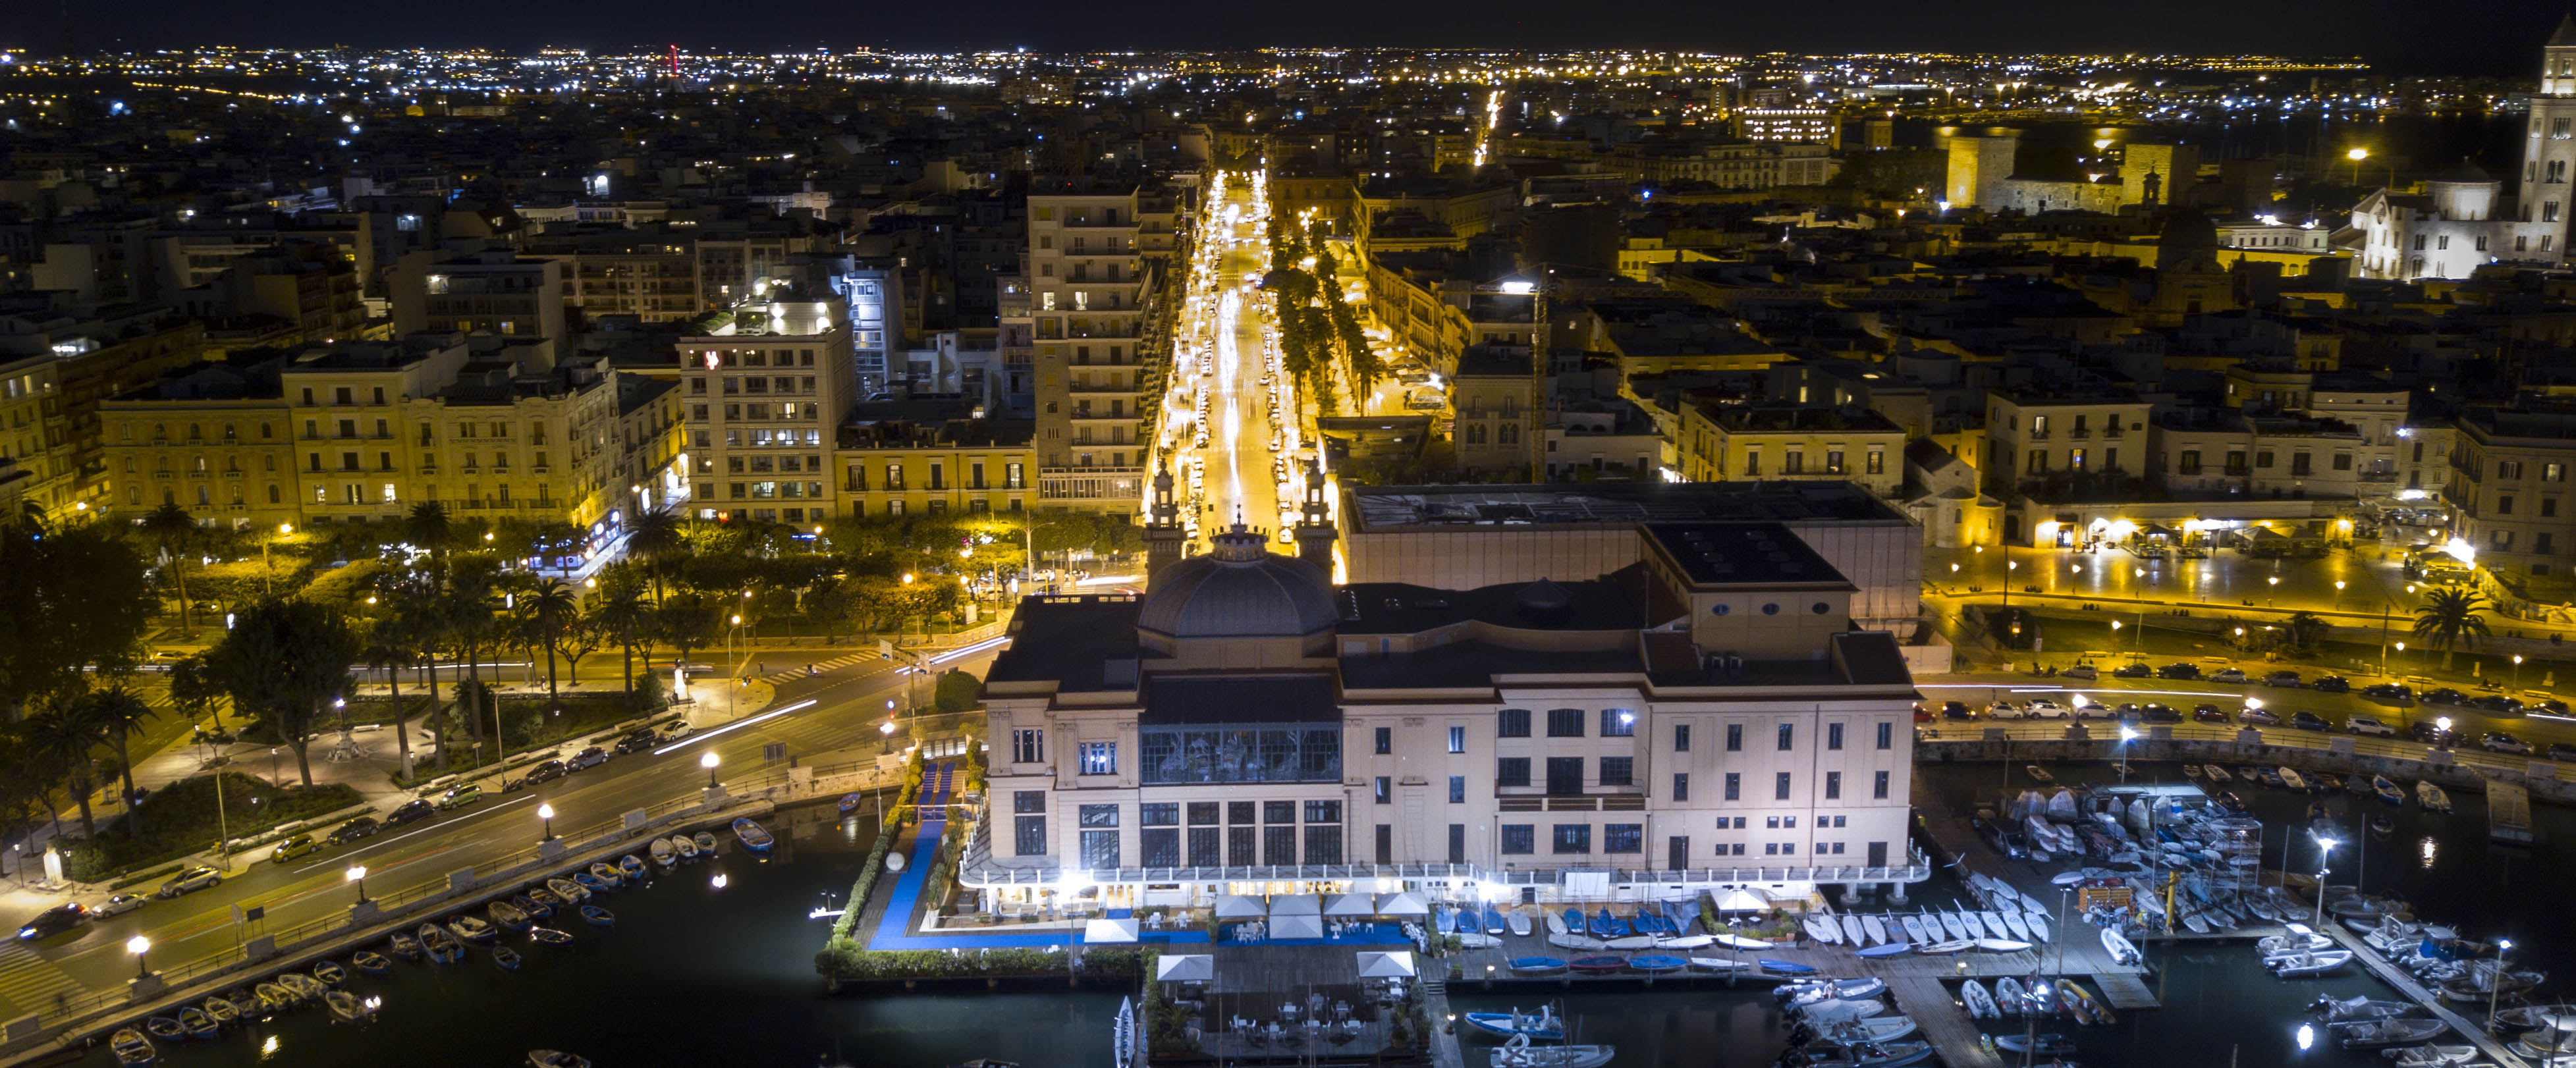 Foto dall'alto notturna di corso vittorio emanuele a Bari